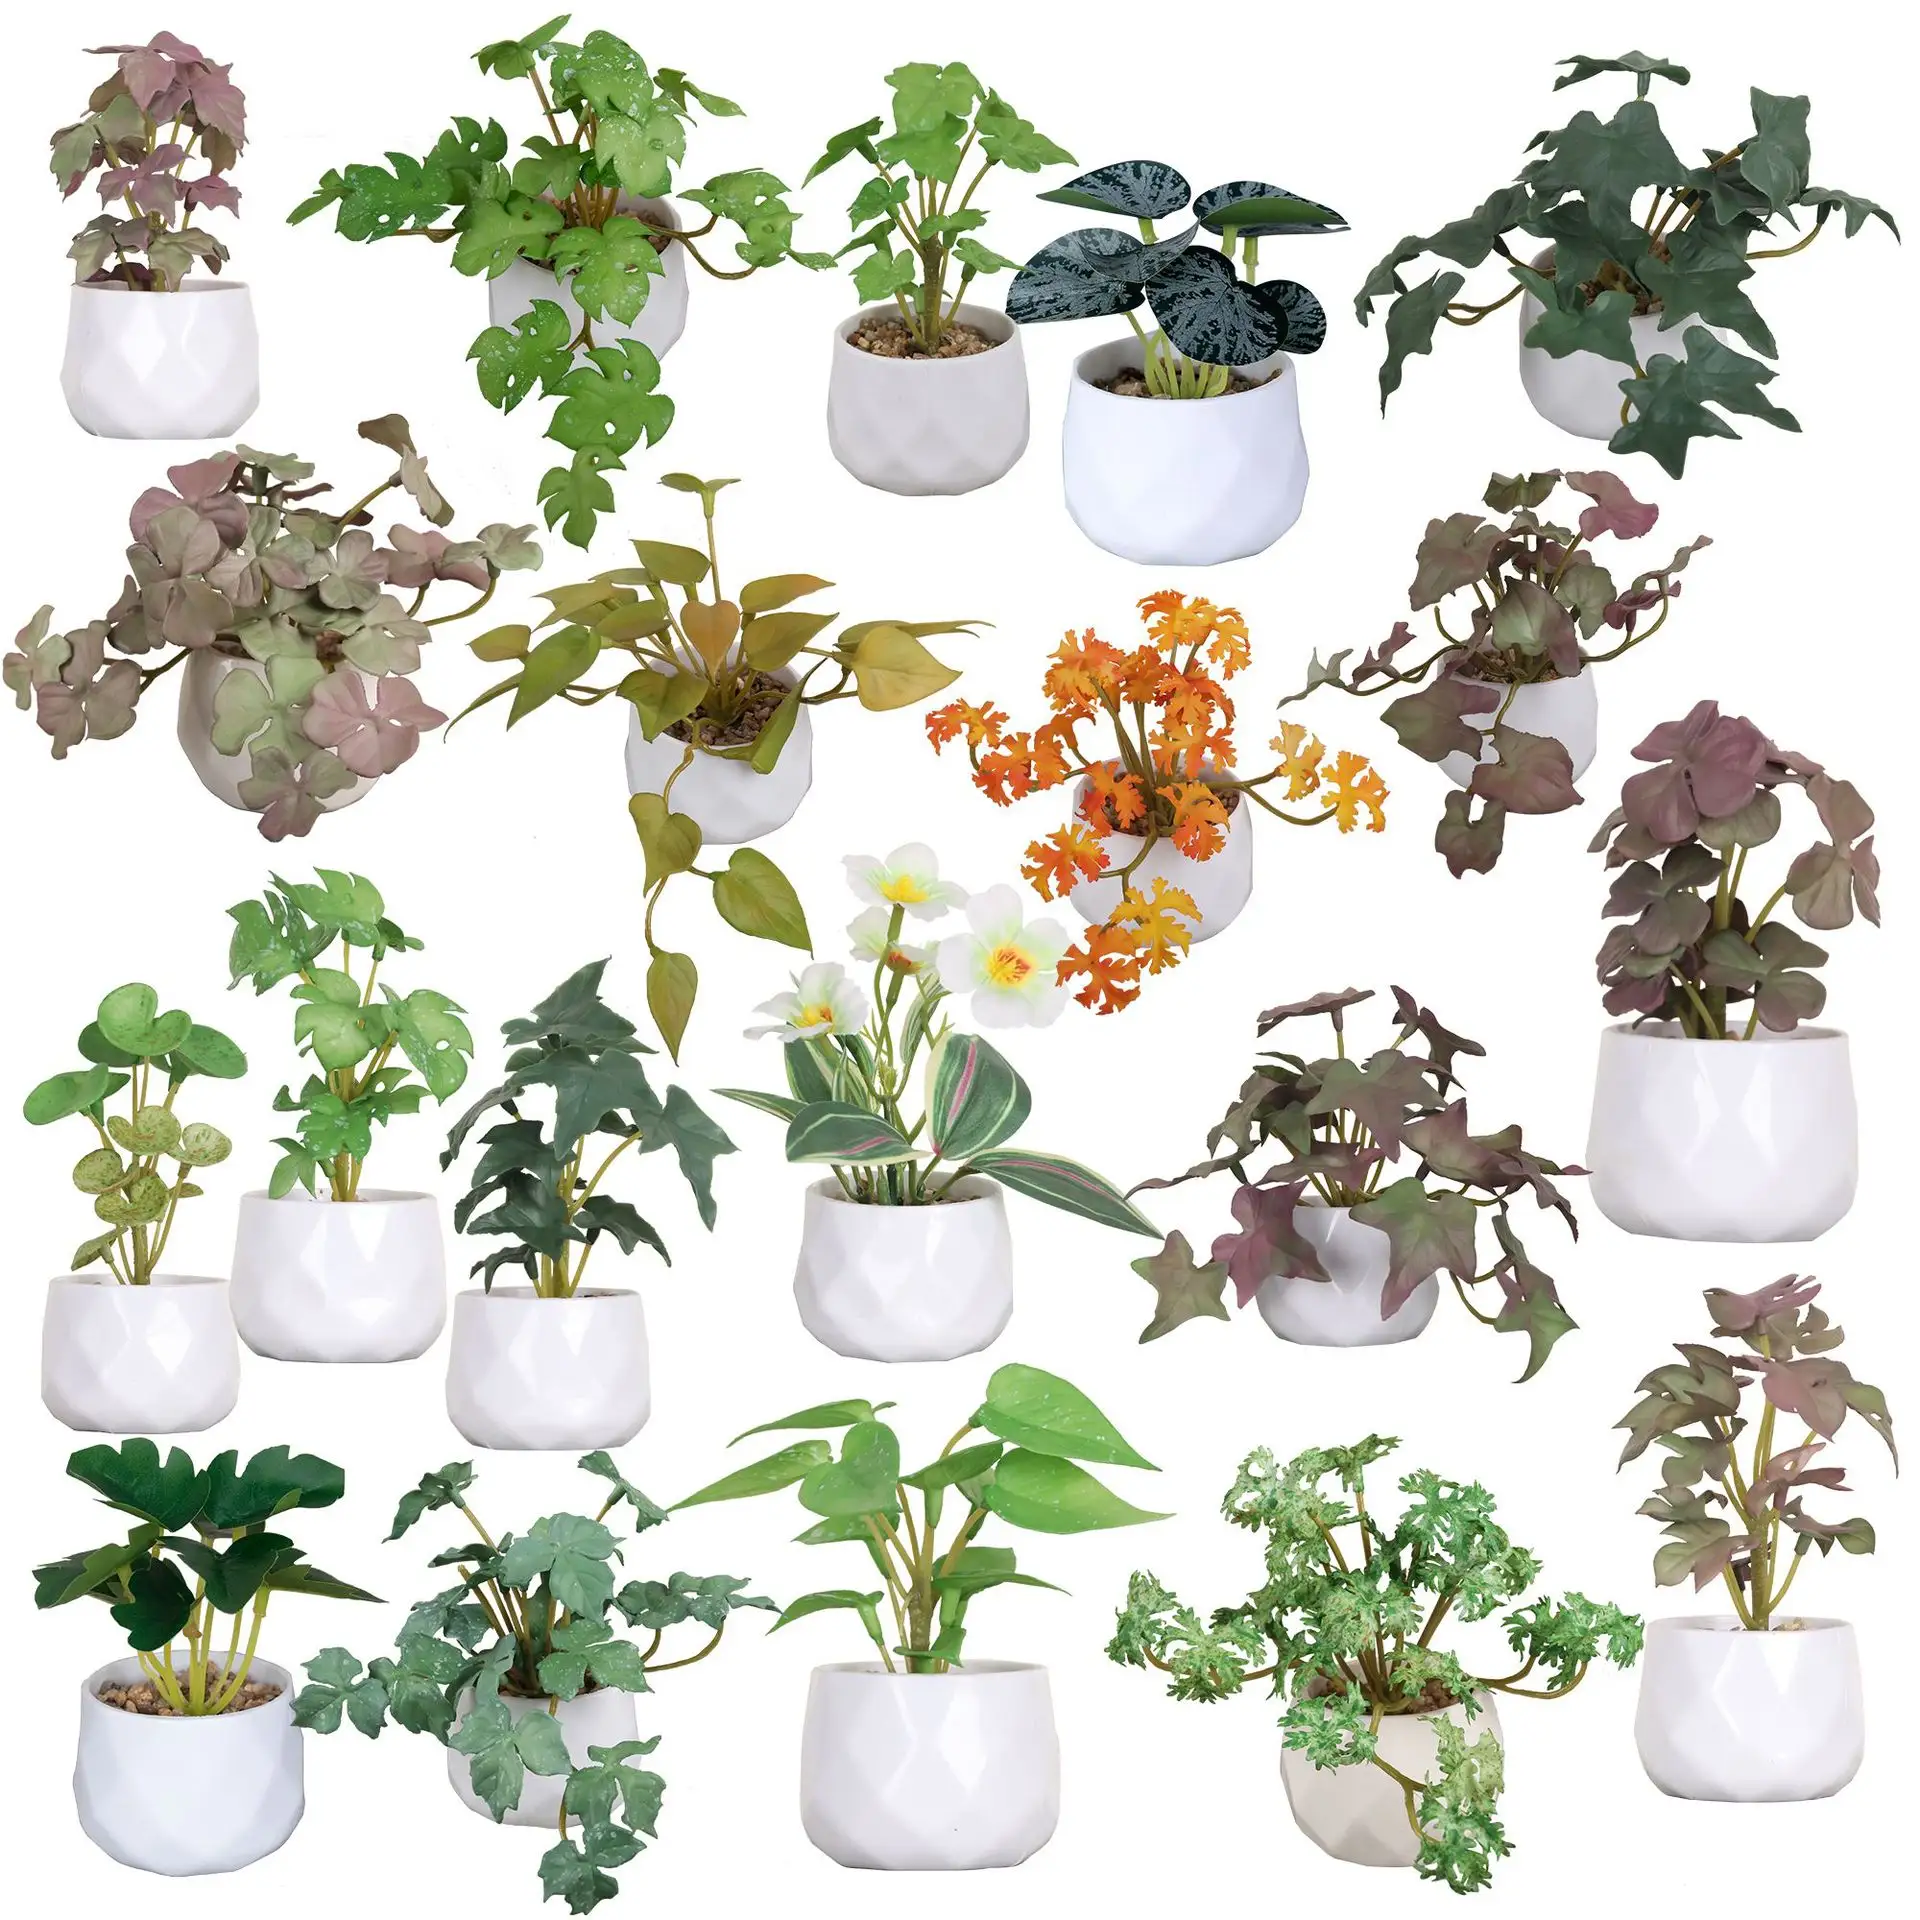 Tanaman mini berlian imitasi, tanaman hias tangan hijau mini, batu paving, simulasi plastik, tanaman pot, kombinasi desktop, bonsai buatan